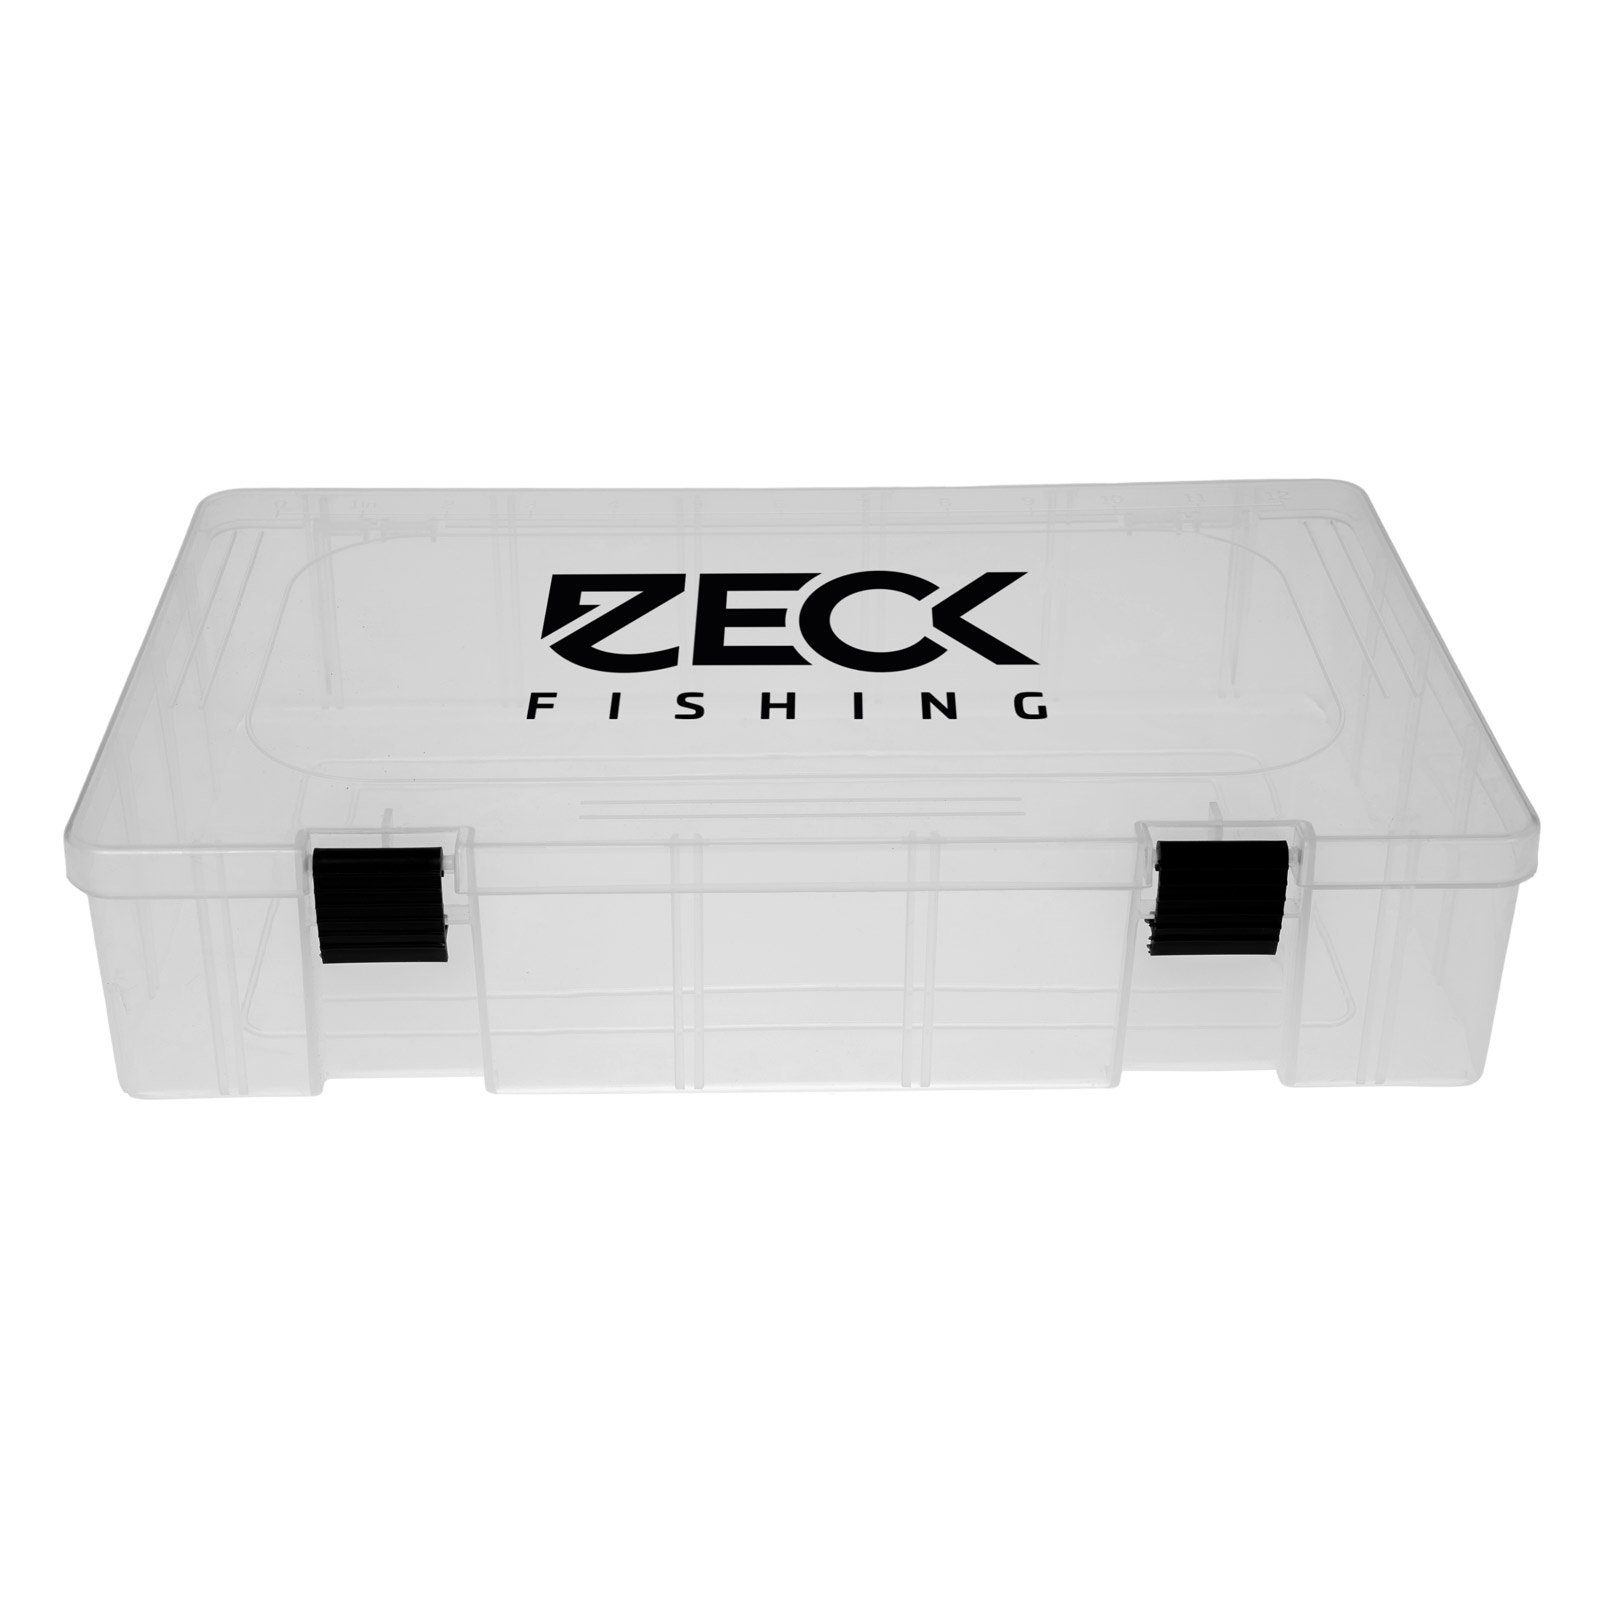 Zeck Fishing Köderbox Compartment Angelkoffer, Box Big Einteilung Bait mit